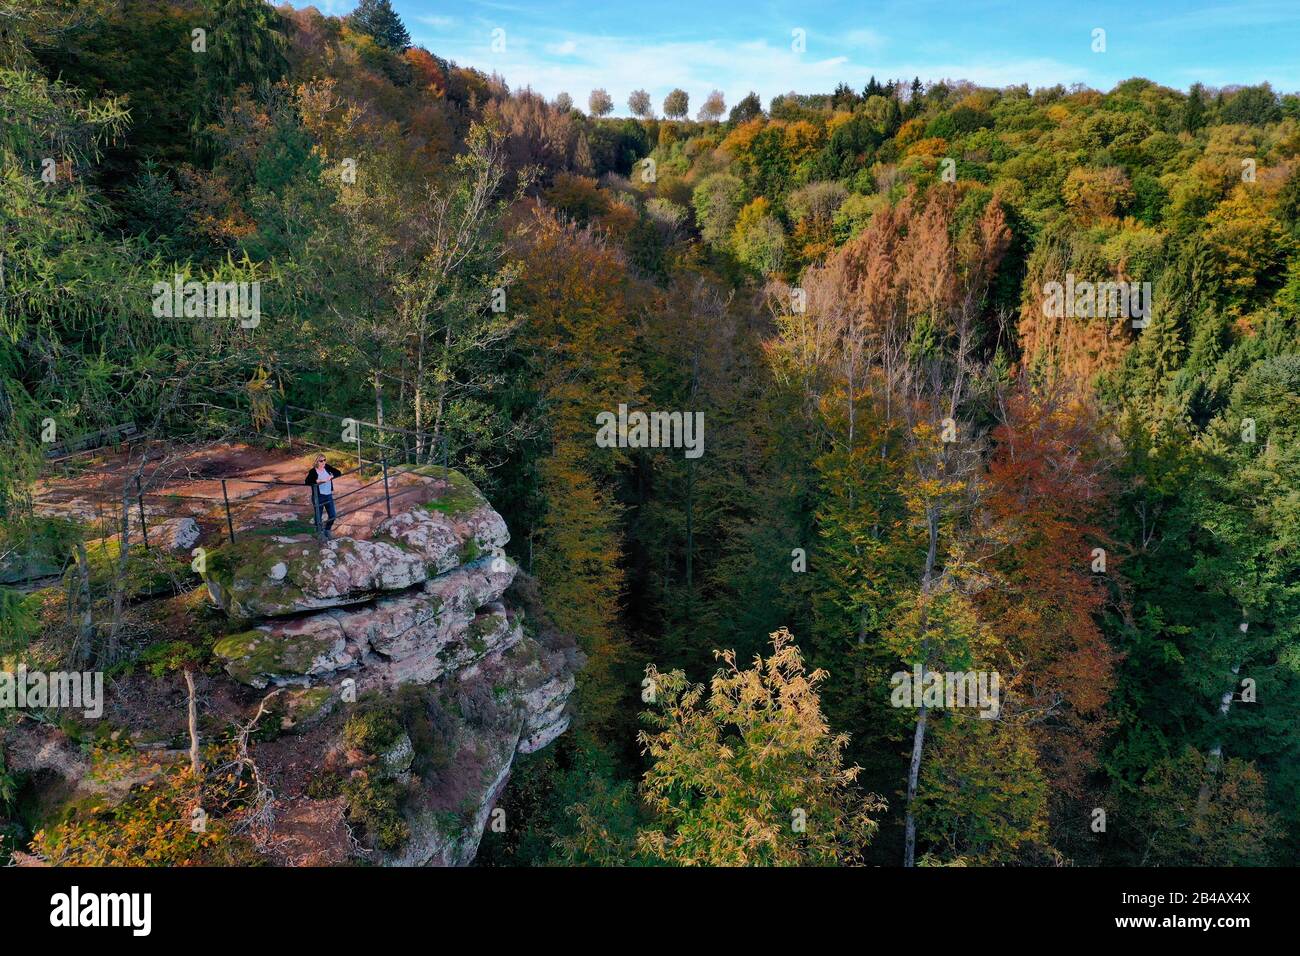 Frankreich, Bas-Rhin, Parc regionale des Vosges du nord (regionaler Naturpark der Nordvogesen), La Petite Pierre, der Rocher Blanc (Weißer Felsen), rosafarbener Sandsteinfelsen, auf den die klaren Flechten ihren Namen geben, der Trois Roches Trail (Luftaufnahme) Stockfoto